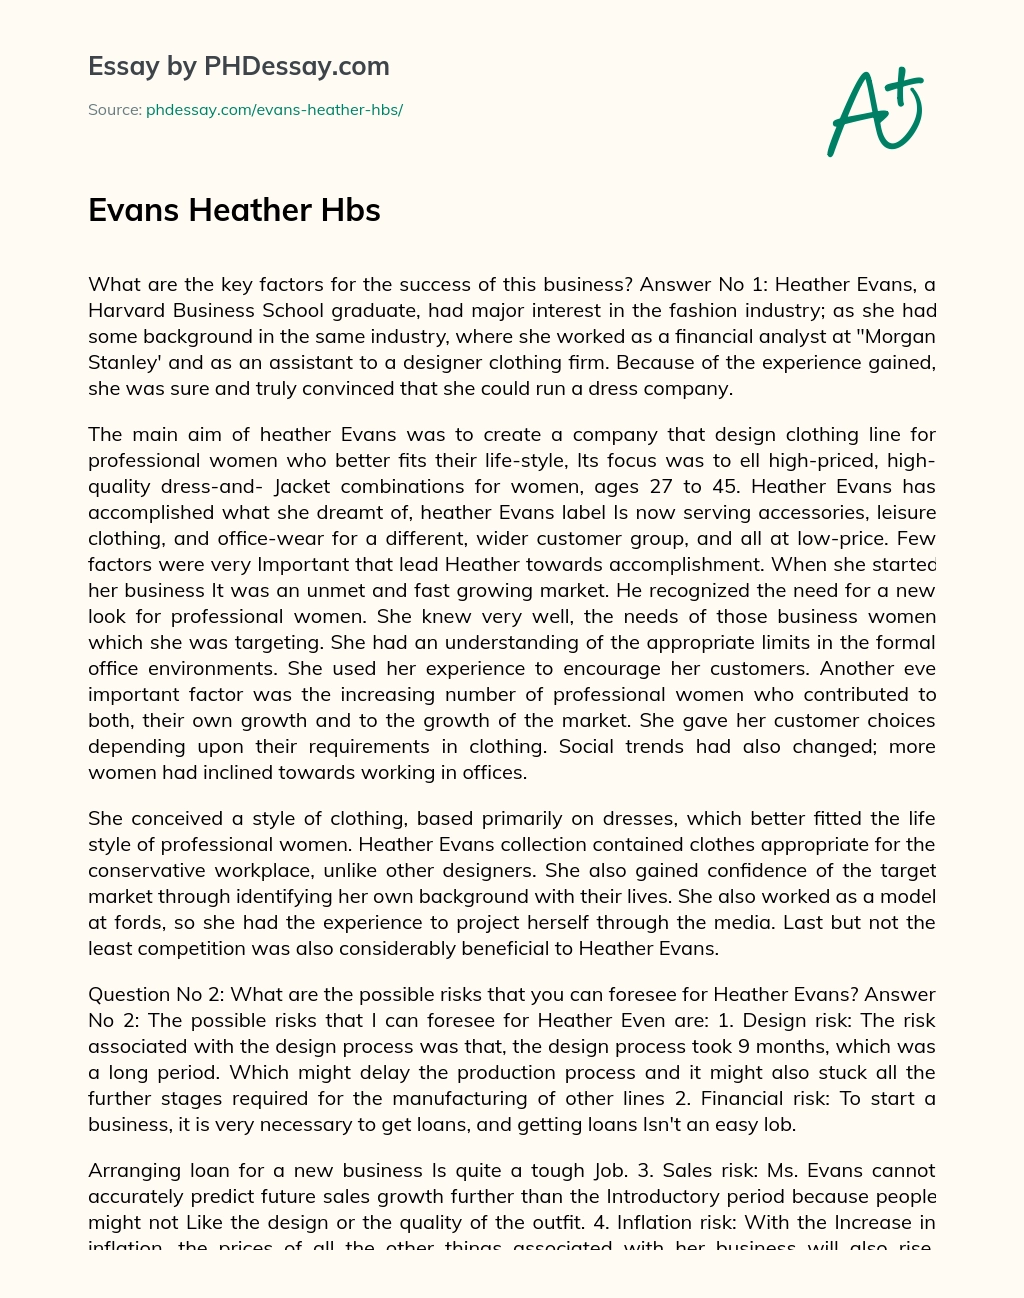 Evans Heather Hbs essay